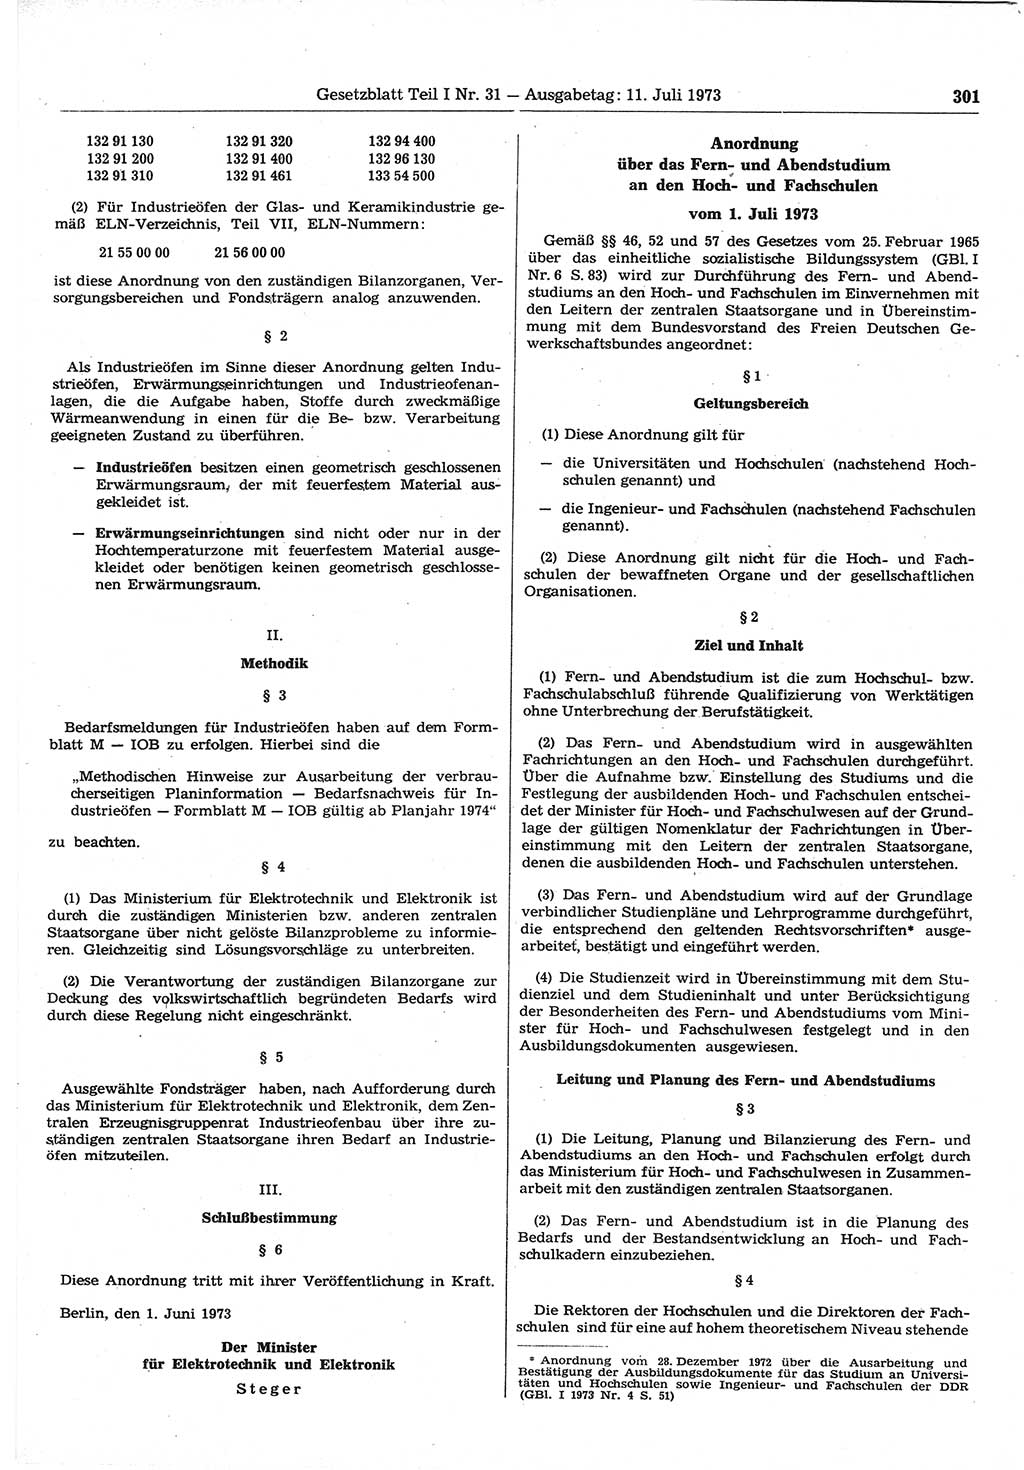 Gesetzblatt (GBl.) der Deutschen Demokratischen Republik (DDR) Teil Ⅰ 1973, Seite 301 (GBl. DDR Ⅰ 1973, S. 301)